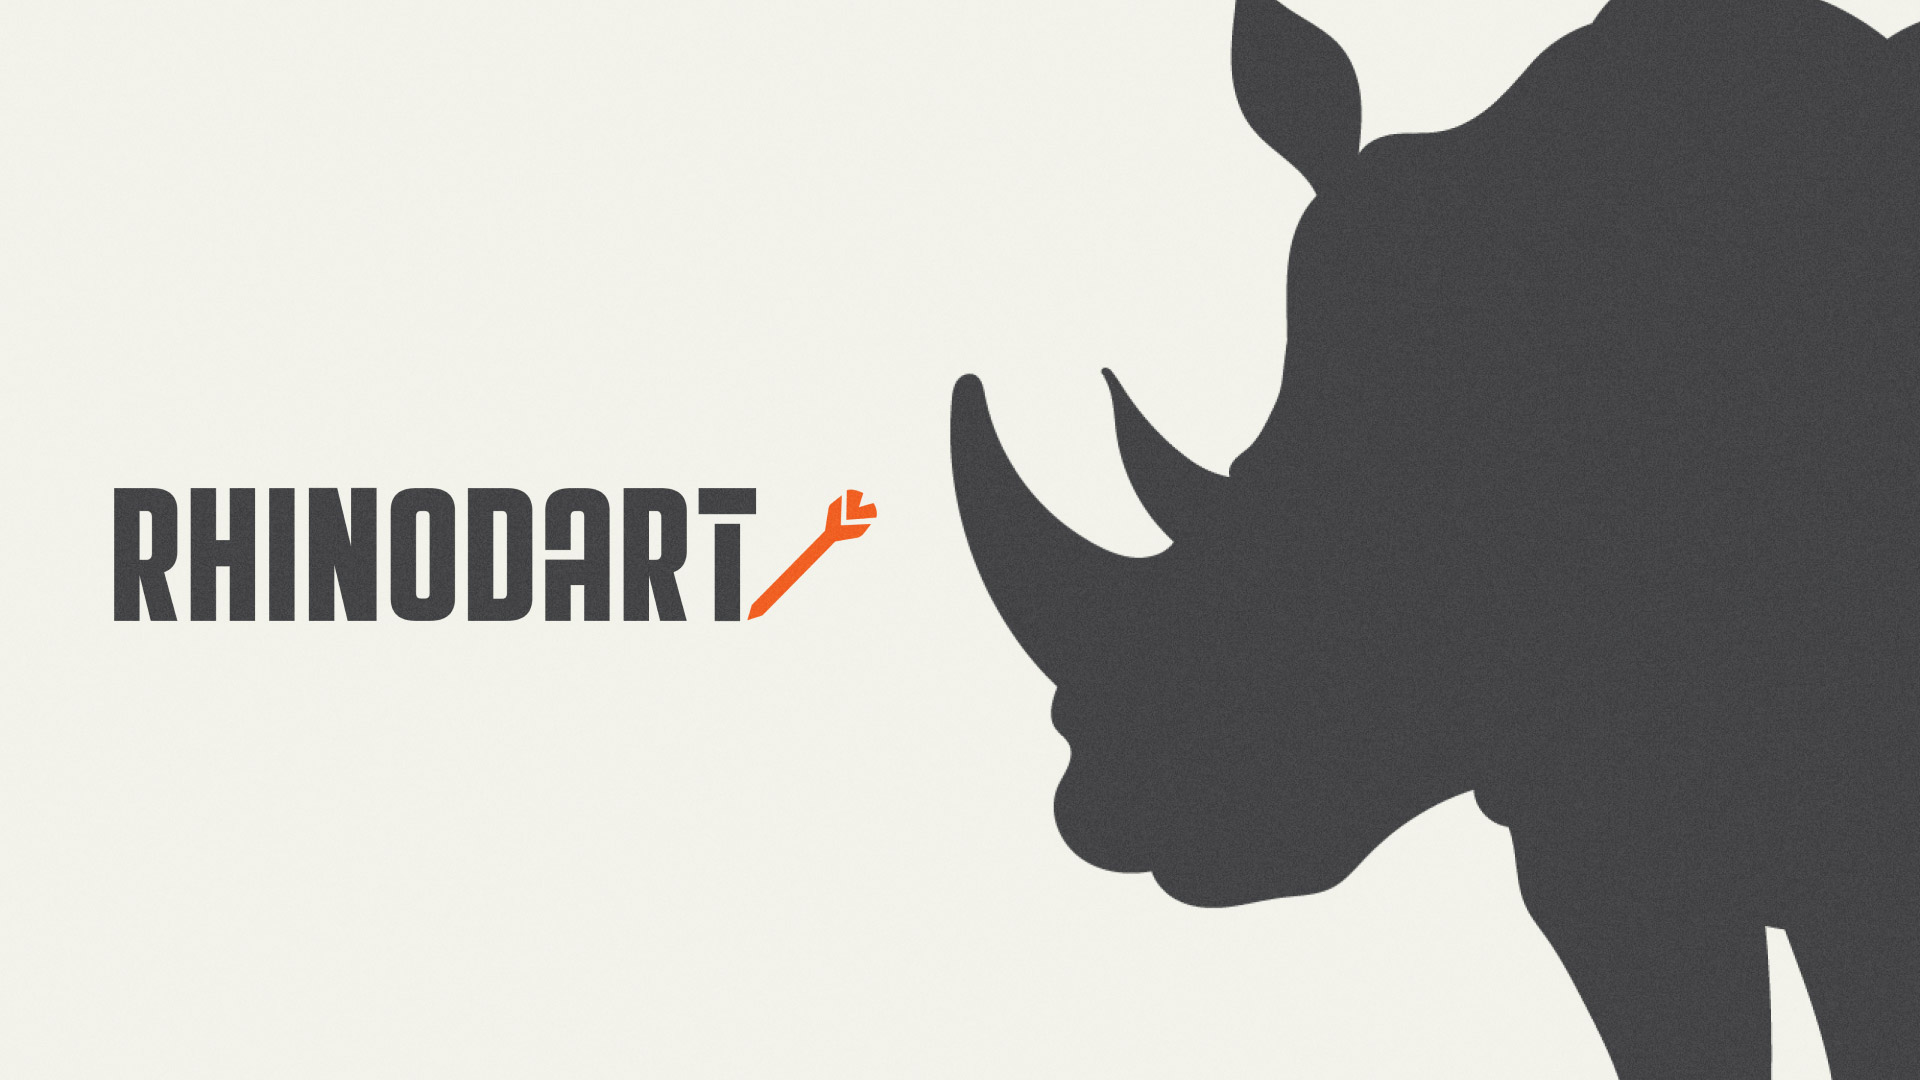 Rhinodart logo with the rhino mascot